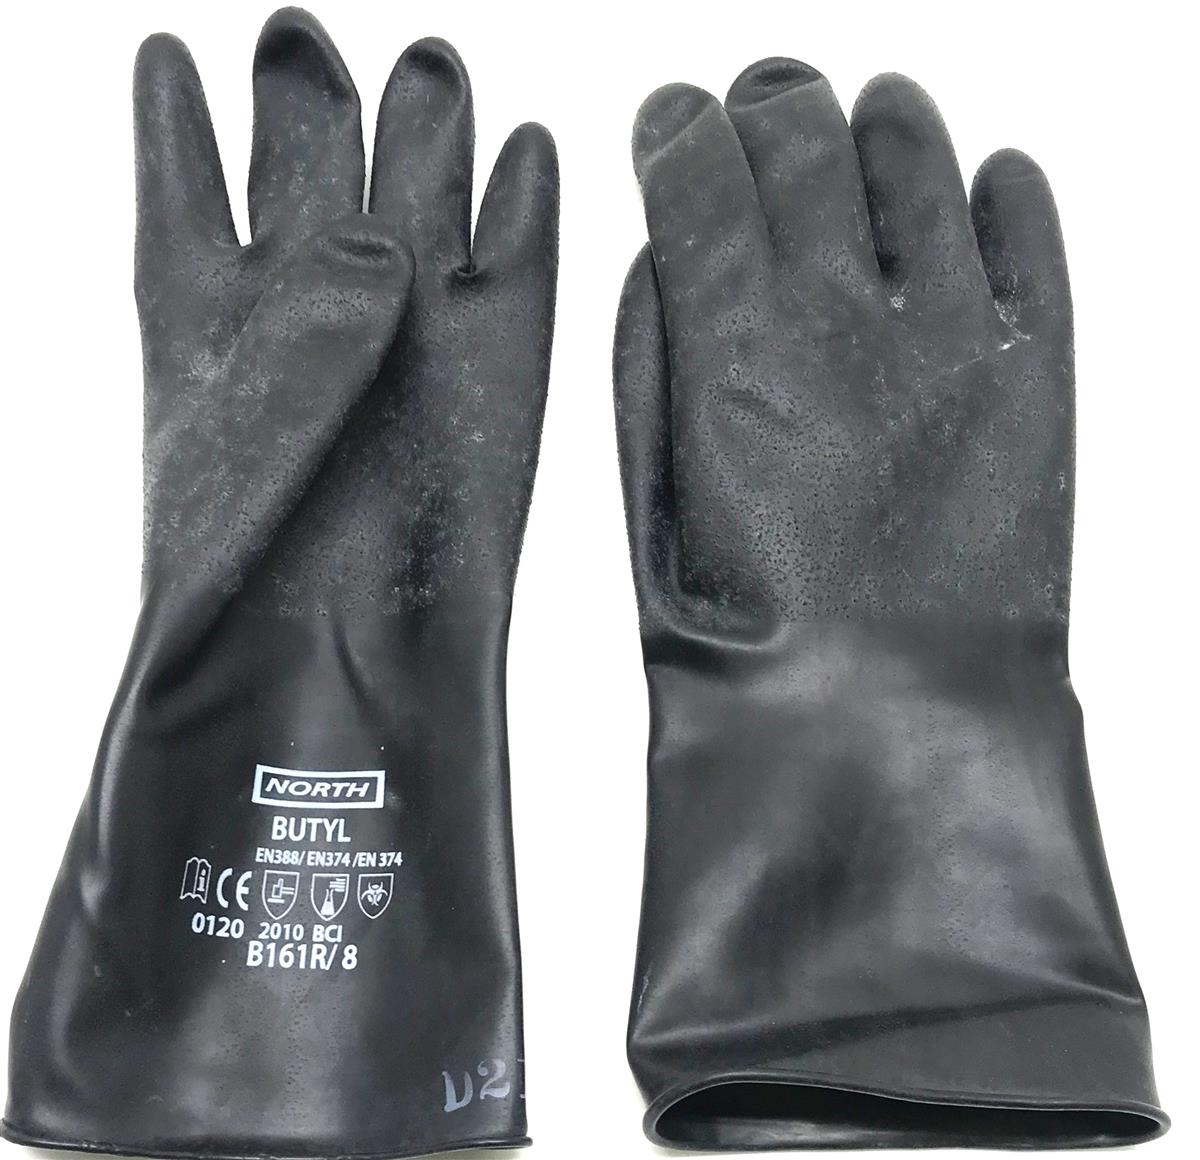 SP-2335 | Special Hazmat Equipment Gloves (3).jpg